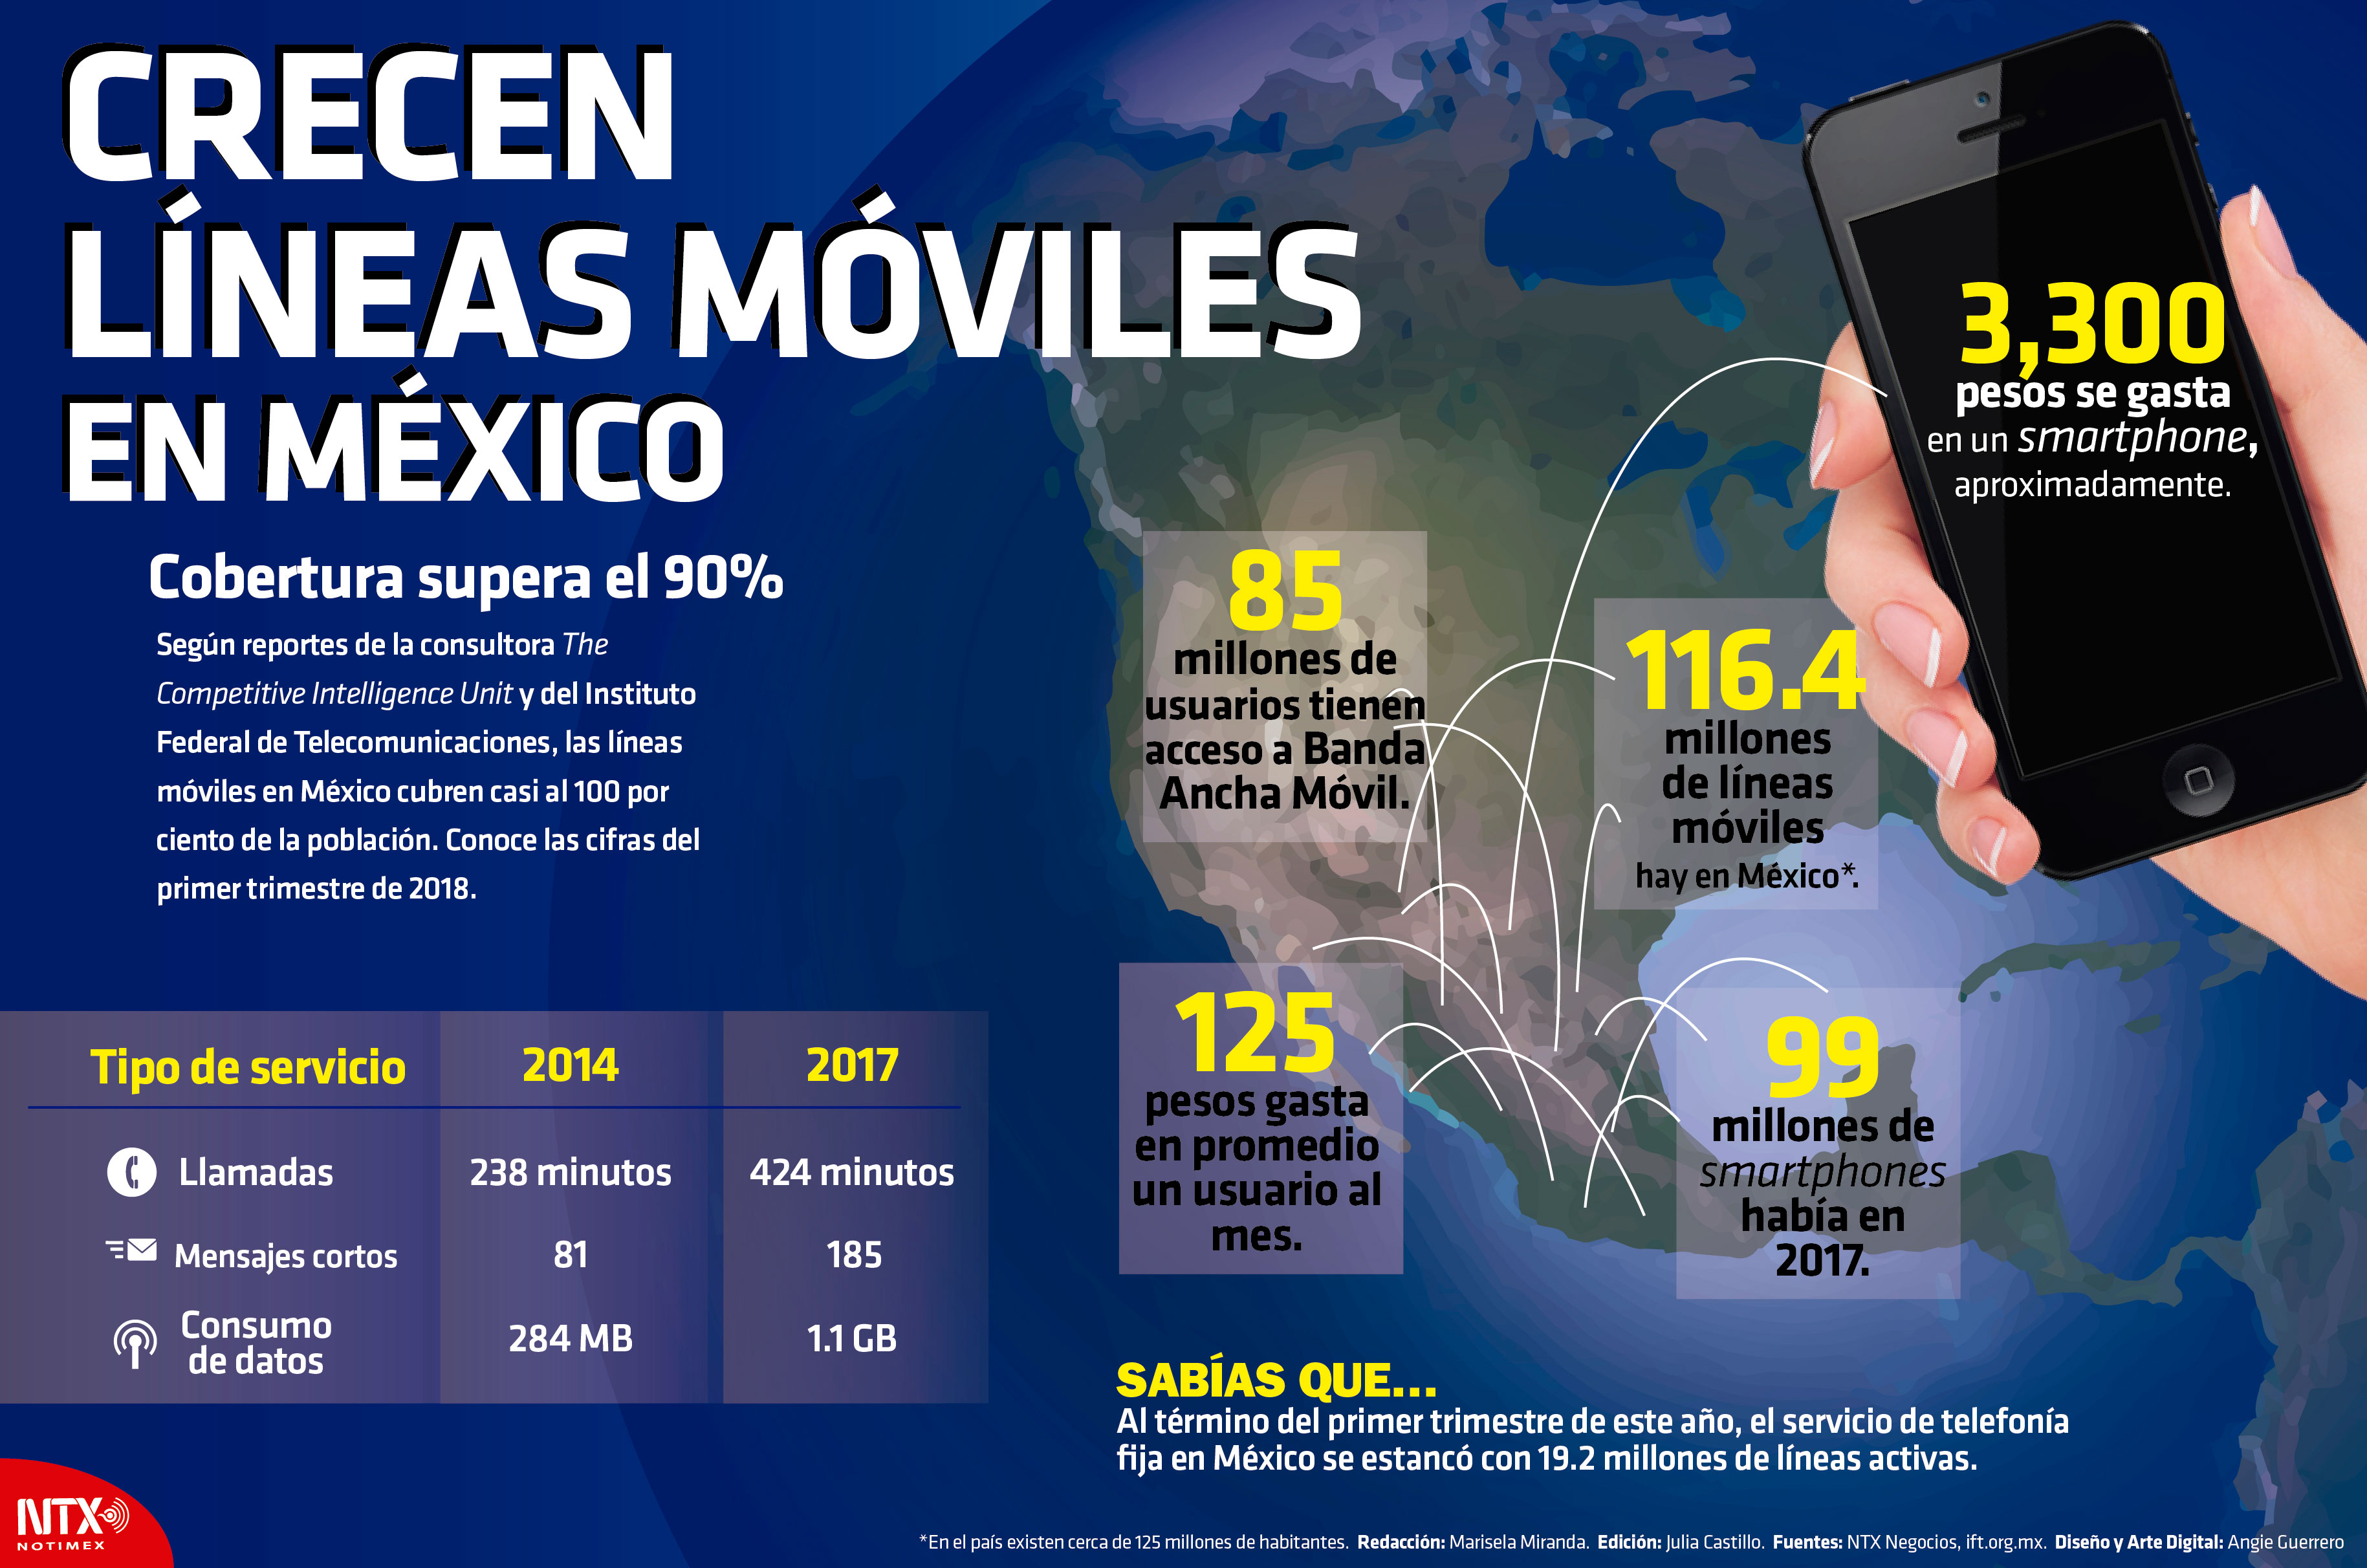 50% de todas las líneas móviles de México son smartphones